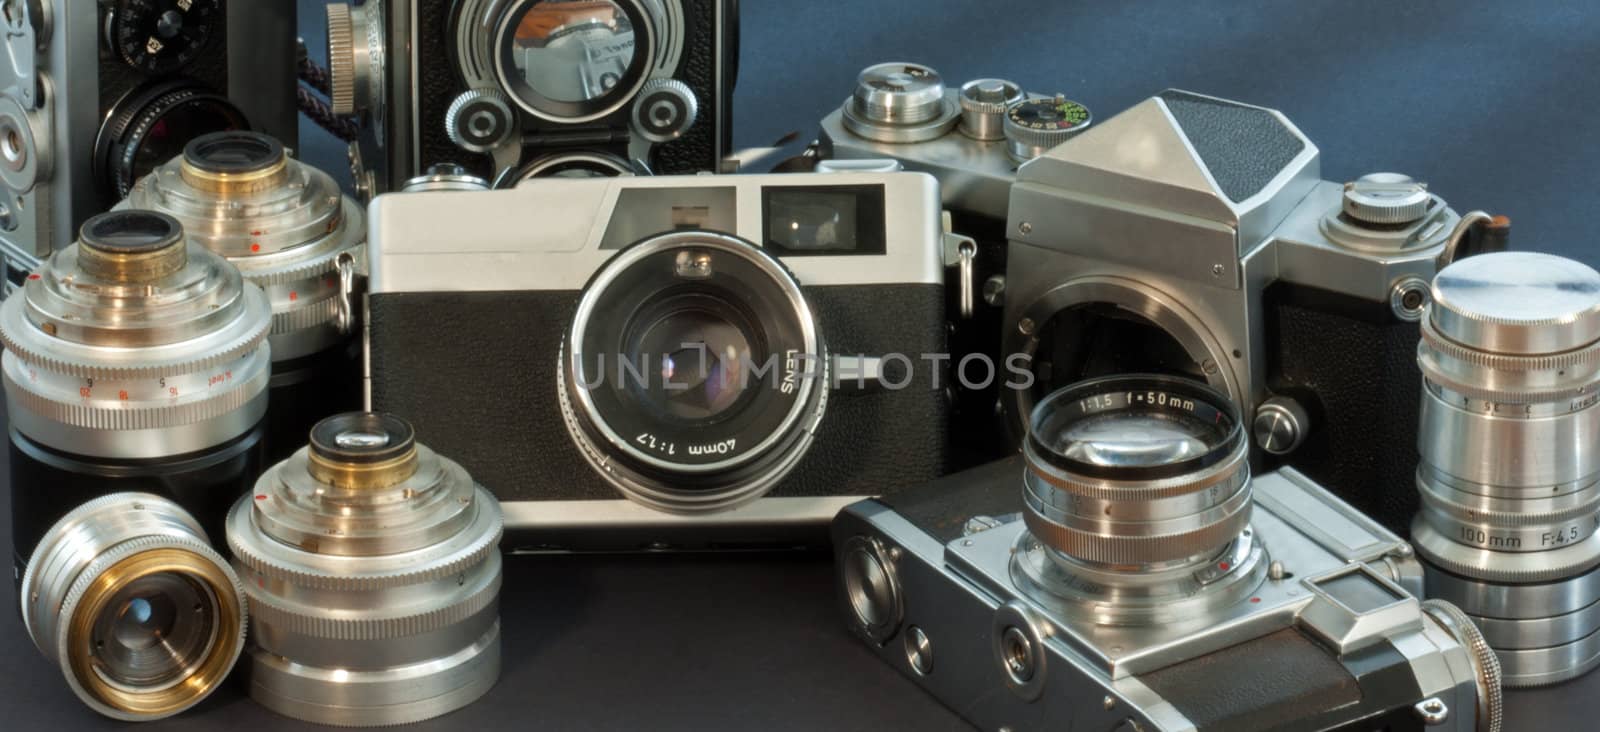 Antique cameras by GunterNezhoda